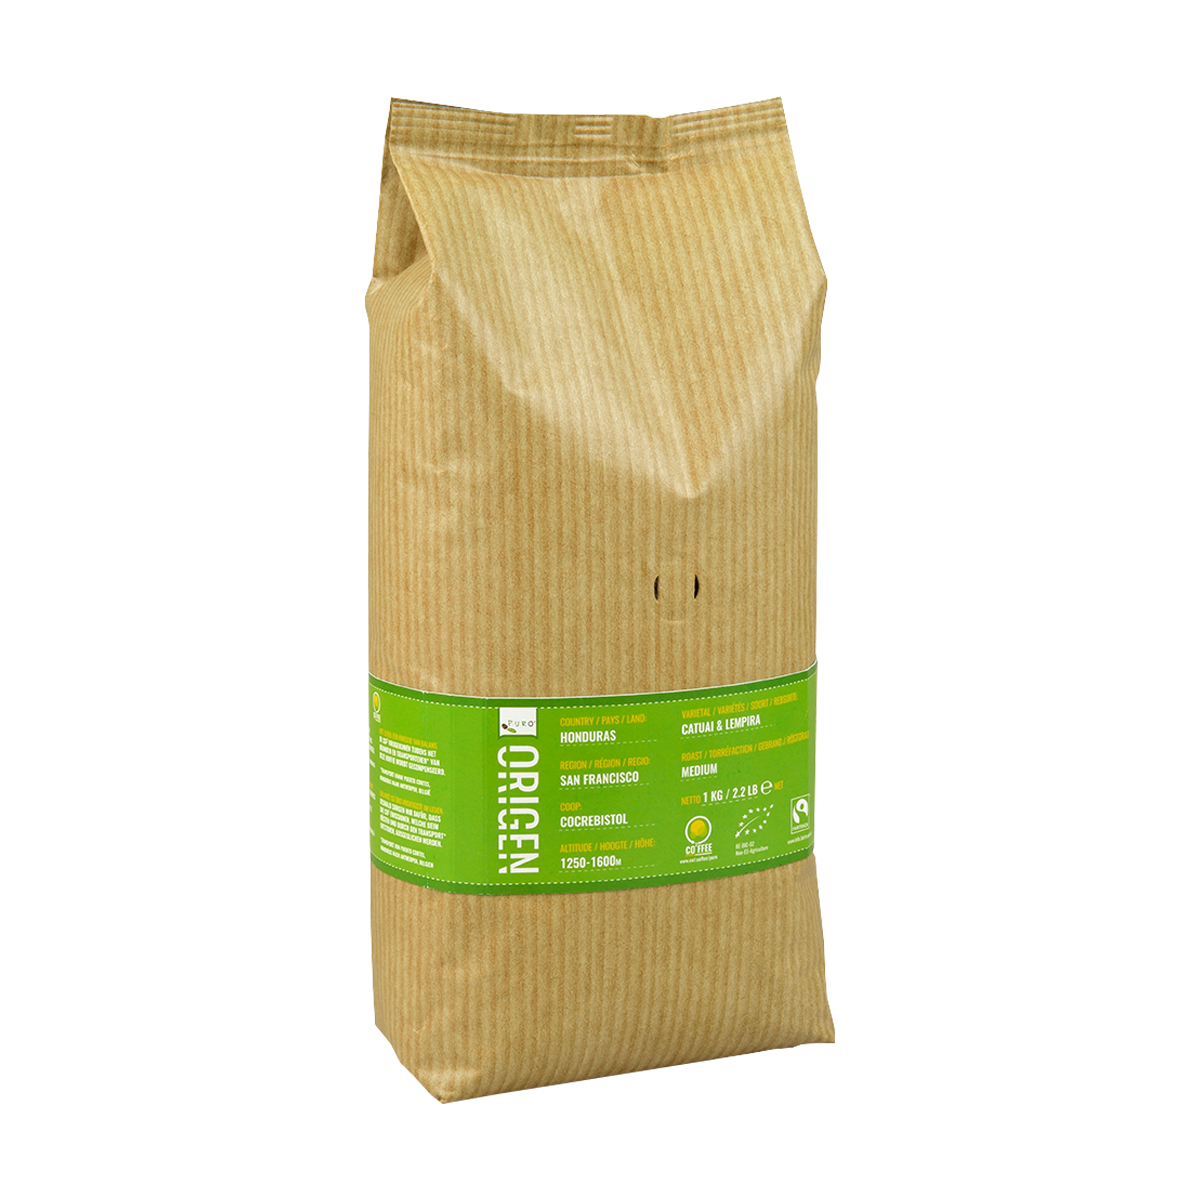 Billede af Puro Single Origin Kaffebønner - 1 kg.